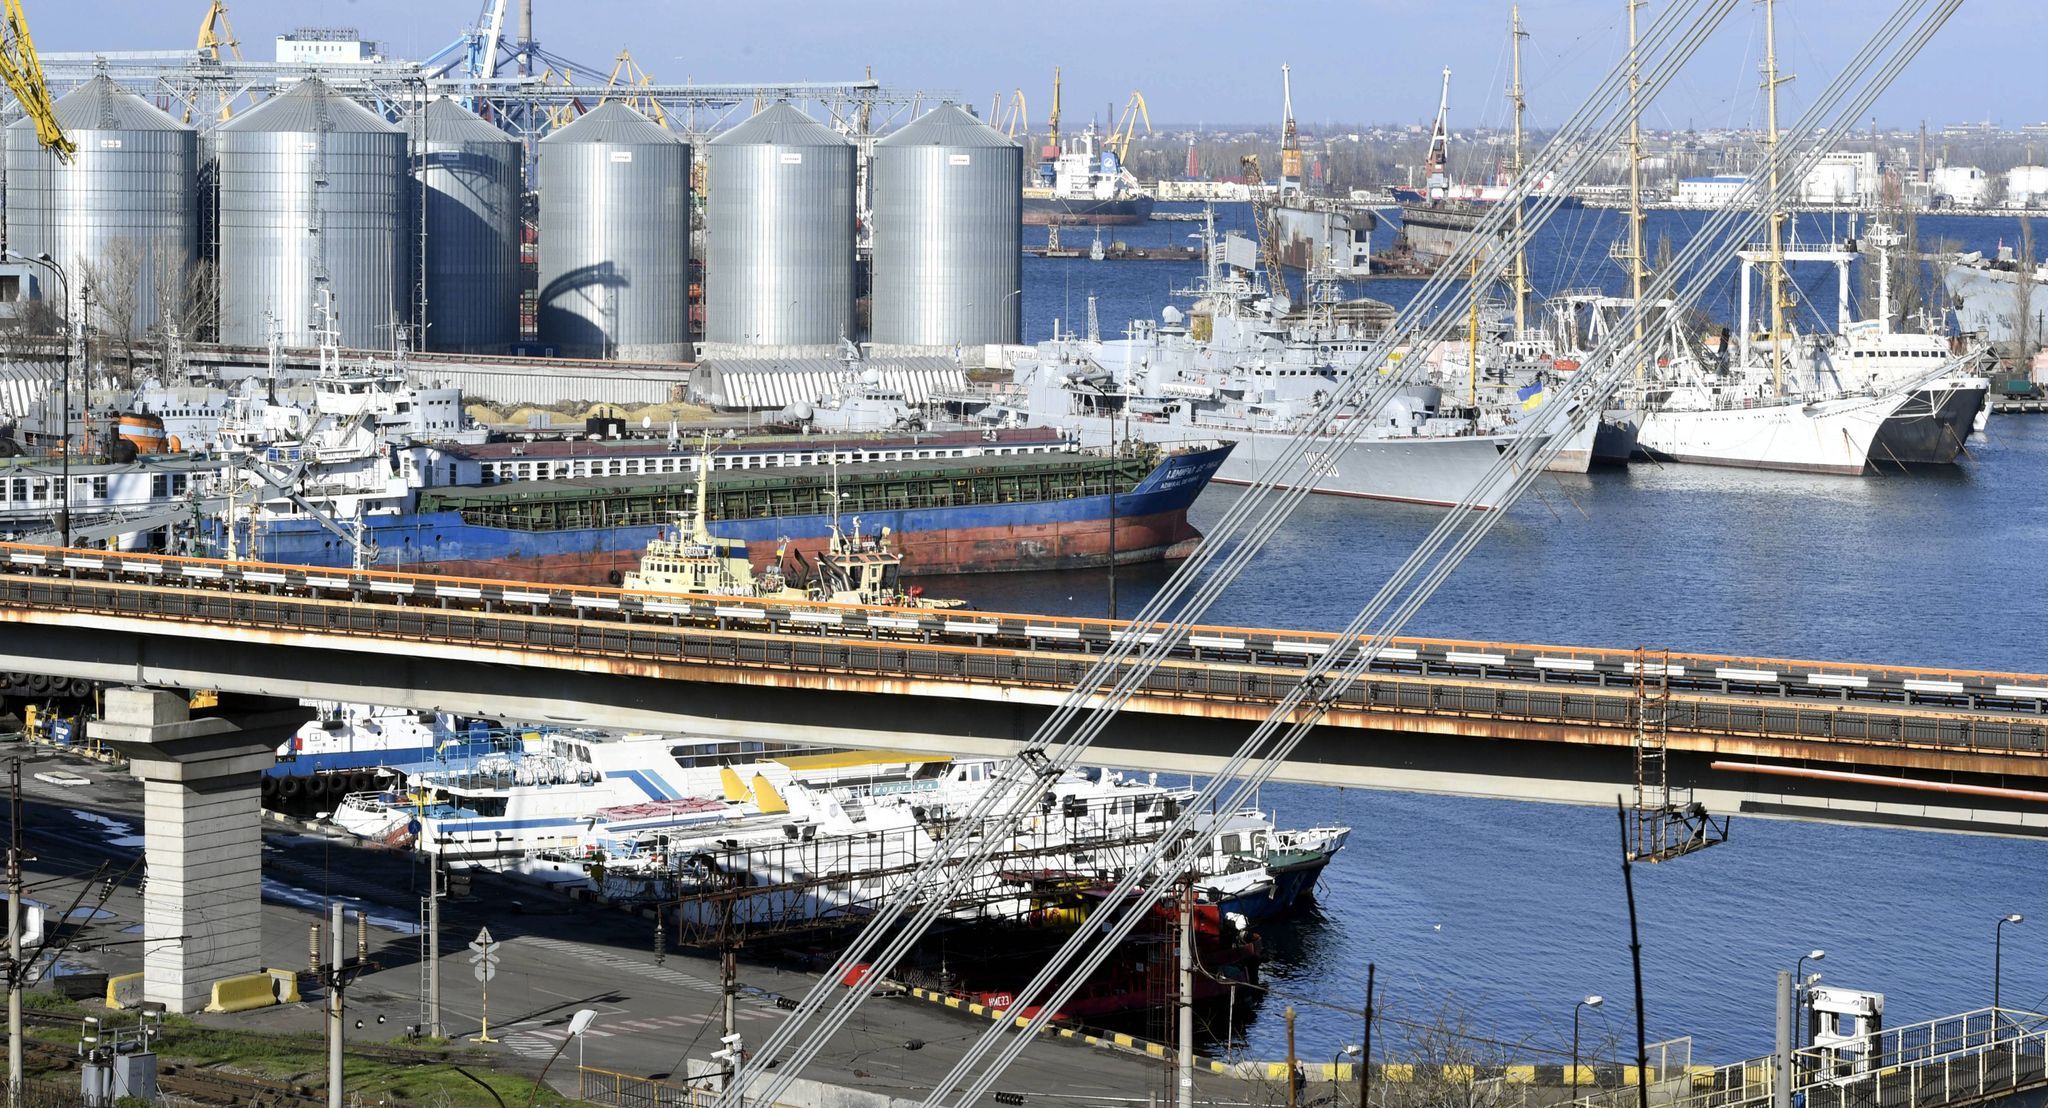 Blick auf den Hafen von Odessa im November 2016. Einen Tag nach der Vereinbarung über die Ausfuhr von ukrainischem Getreide über das Schwarze Meer hat Russland nach Angaben aus Kiew den Hafen von Odessa mit Raketen beschossen. Foto: dpa/Nukari